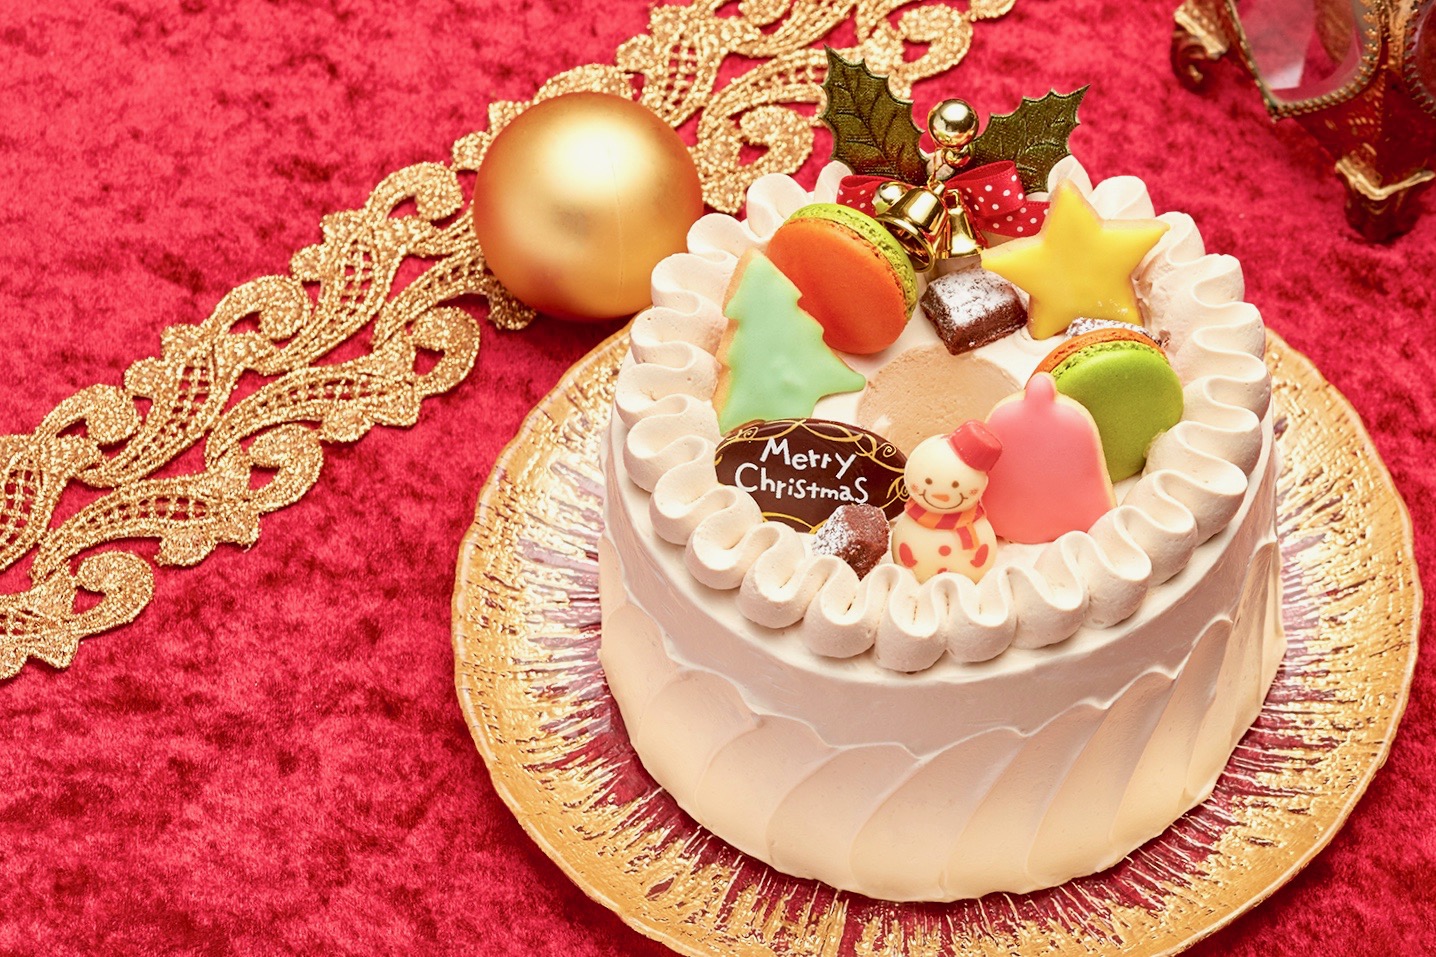 京王プラザホテル多摩のクリスマスケーキ2019 カシュミール